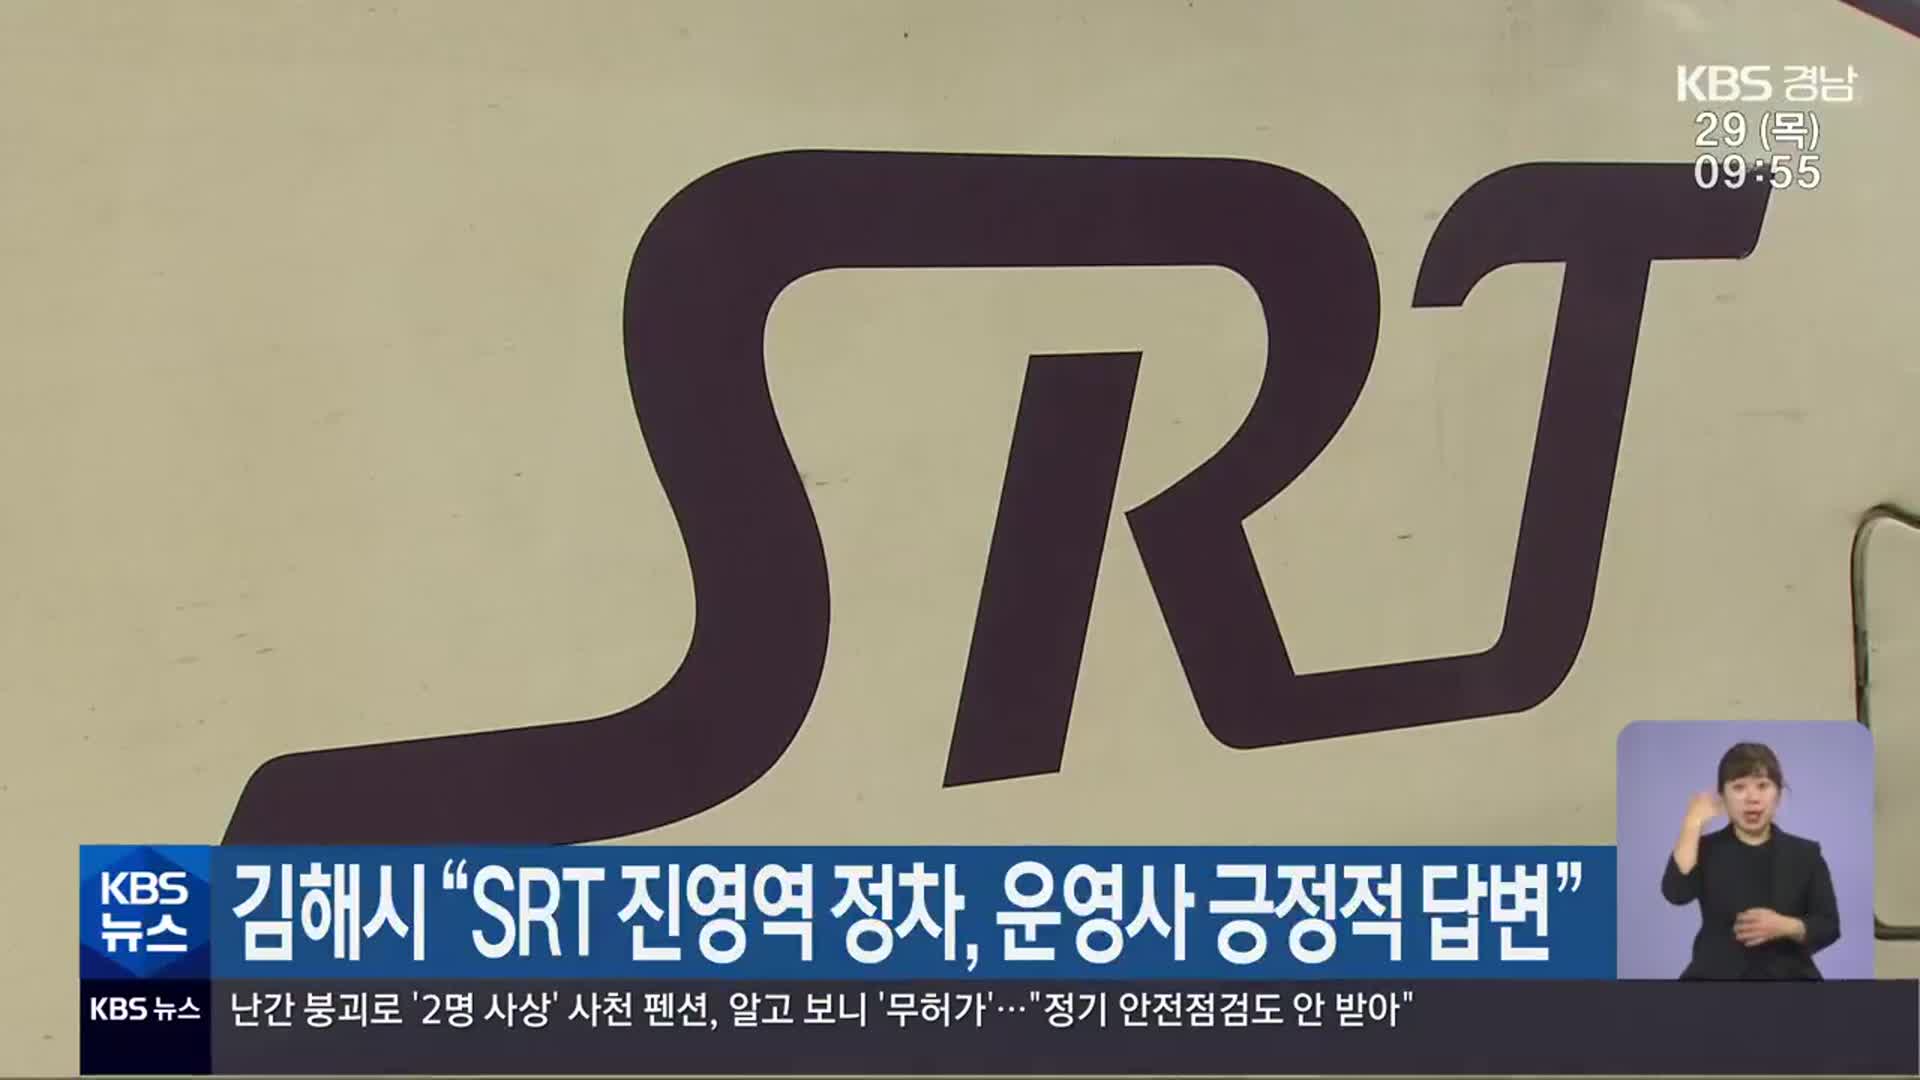 김해시 “SRT 진영역 정차, 운영사 긍정적 답변”